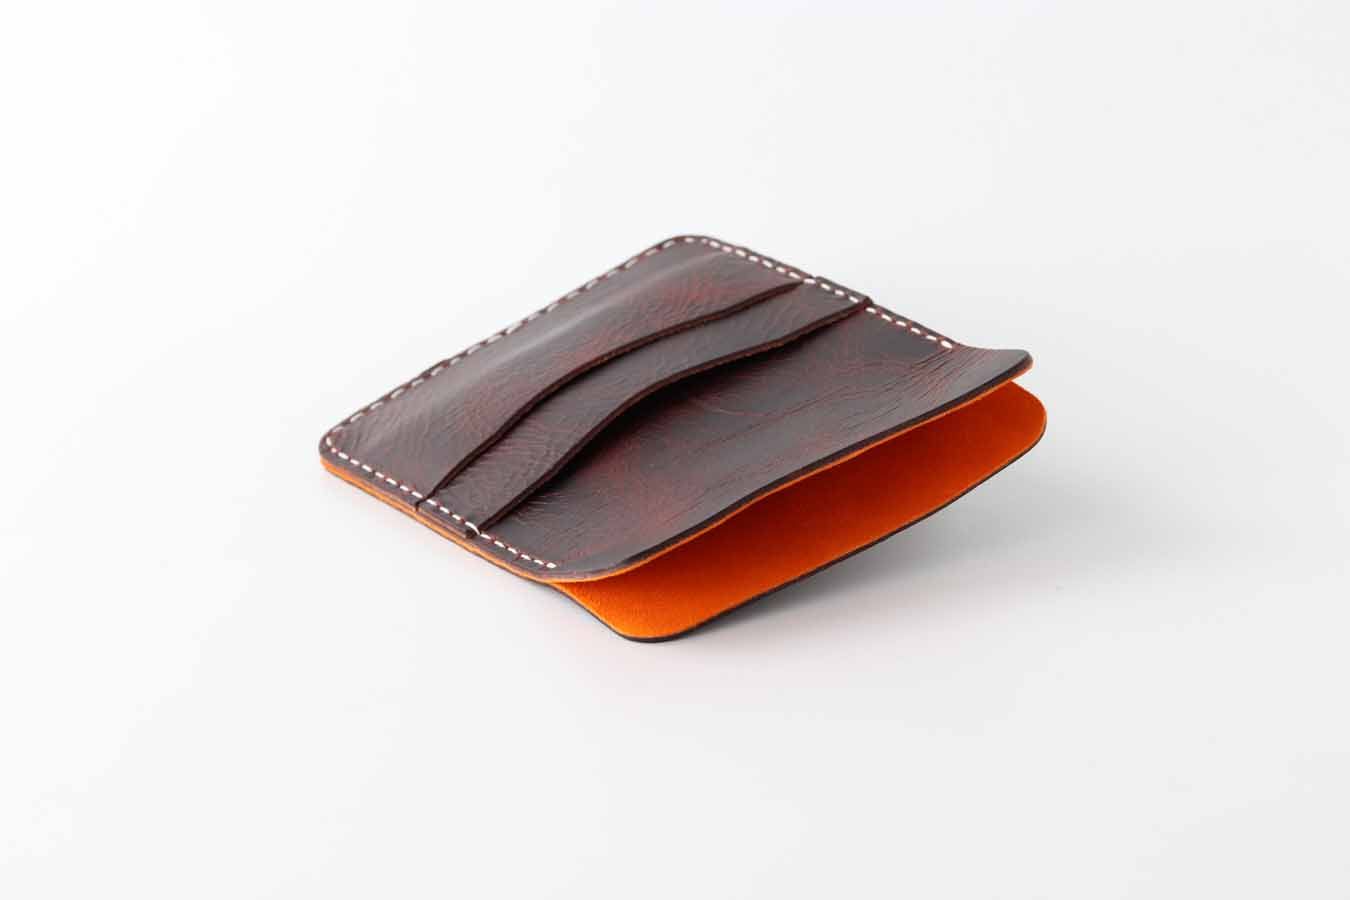 travel passport wallet organiser sleeve in dark brown and orange by kaseta